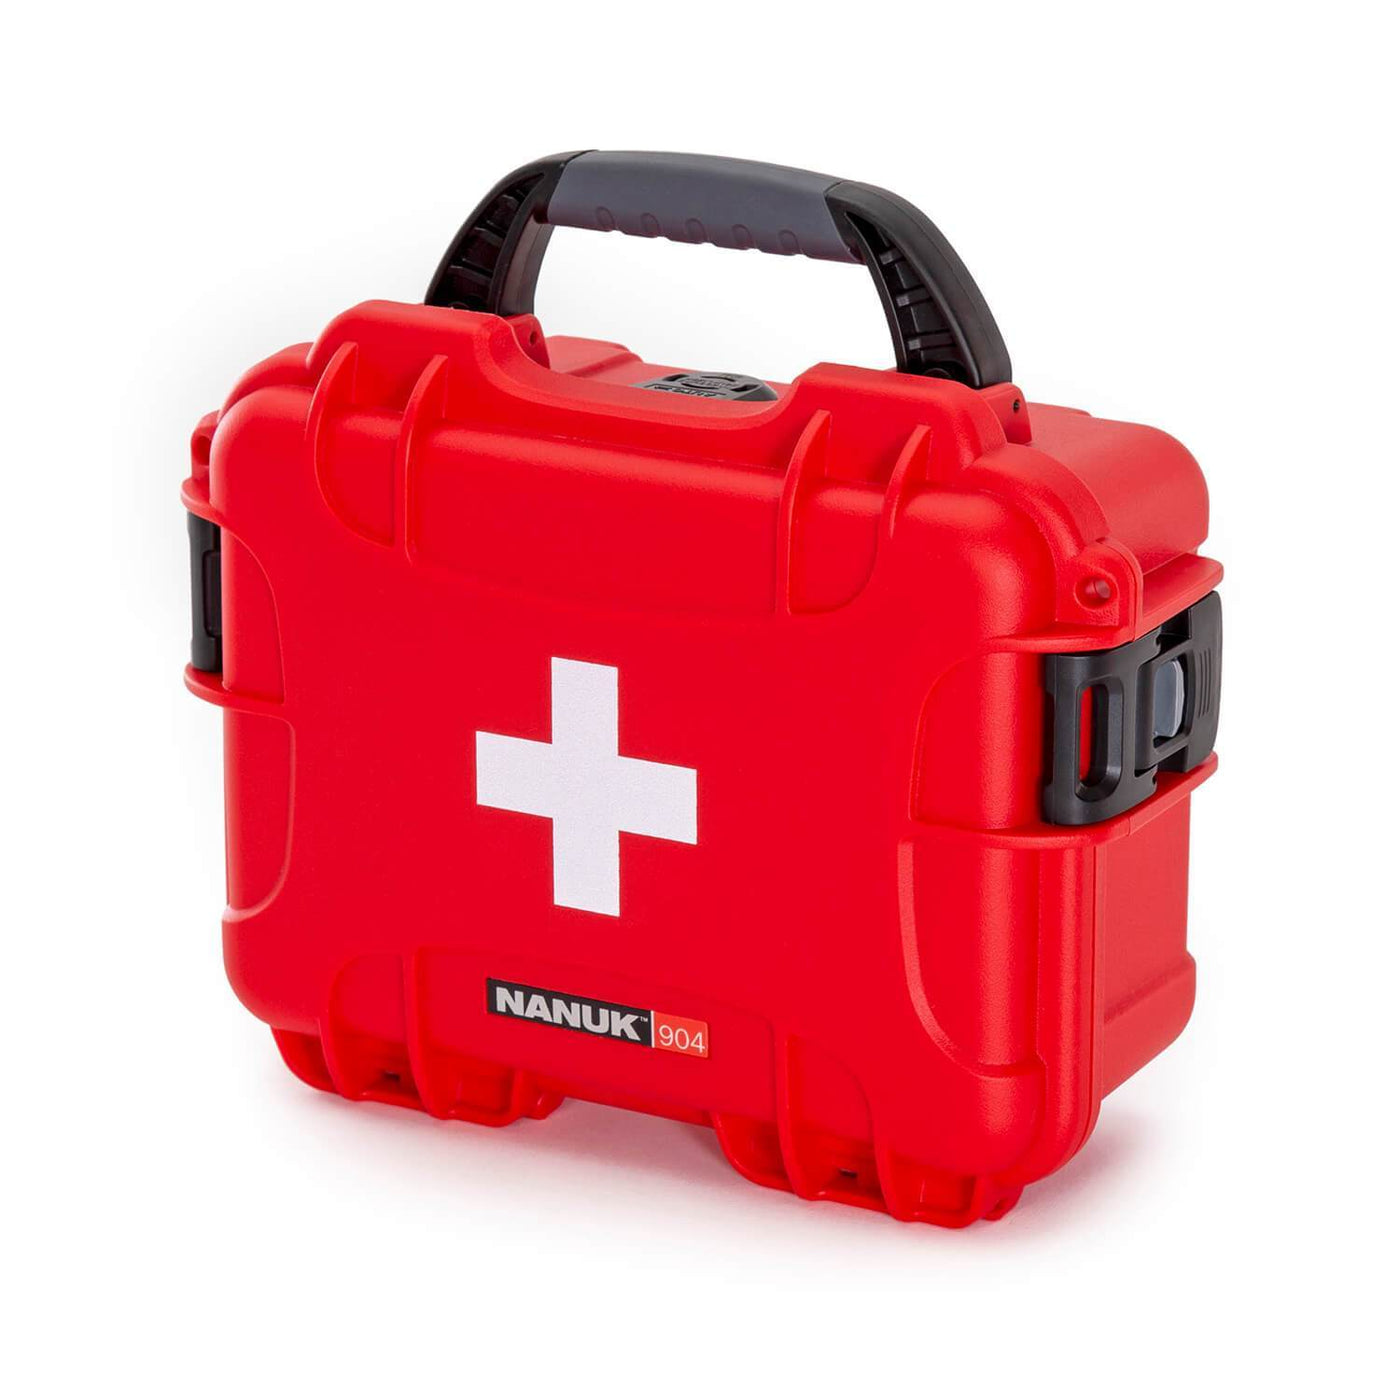 NANUK 904 valise de premiers secours - valise extérieur - Rouge - NANUK